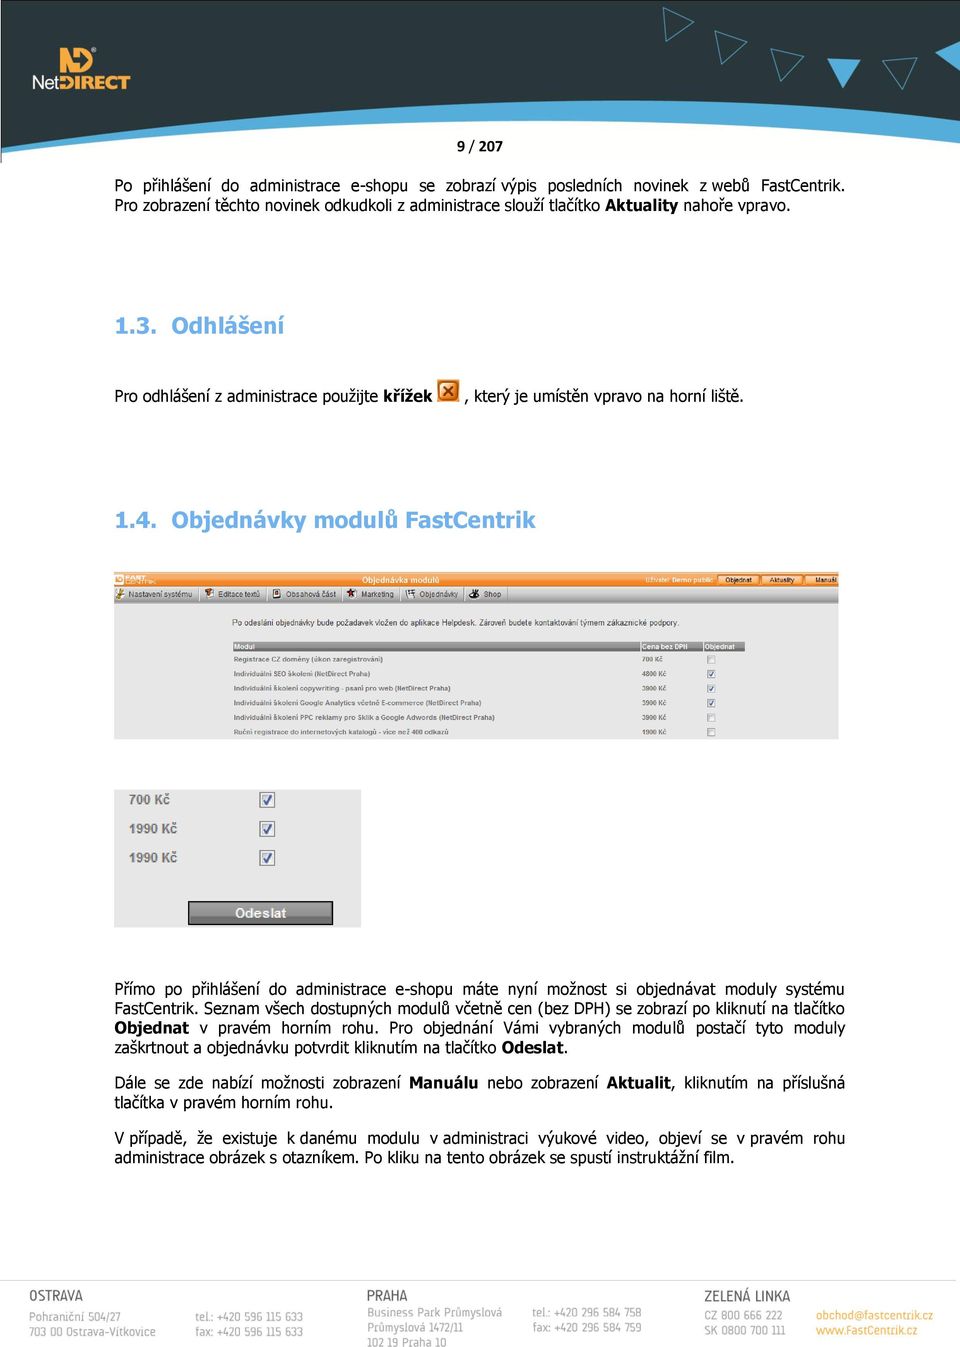 Objednávky modulů FastCentrik Přímo po přihlášení do administrace e-shopu máte nyní moţnost si objednávat moduly systému FastCentrik.